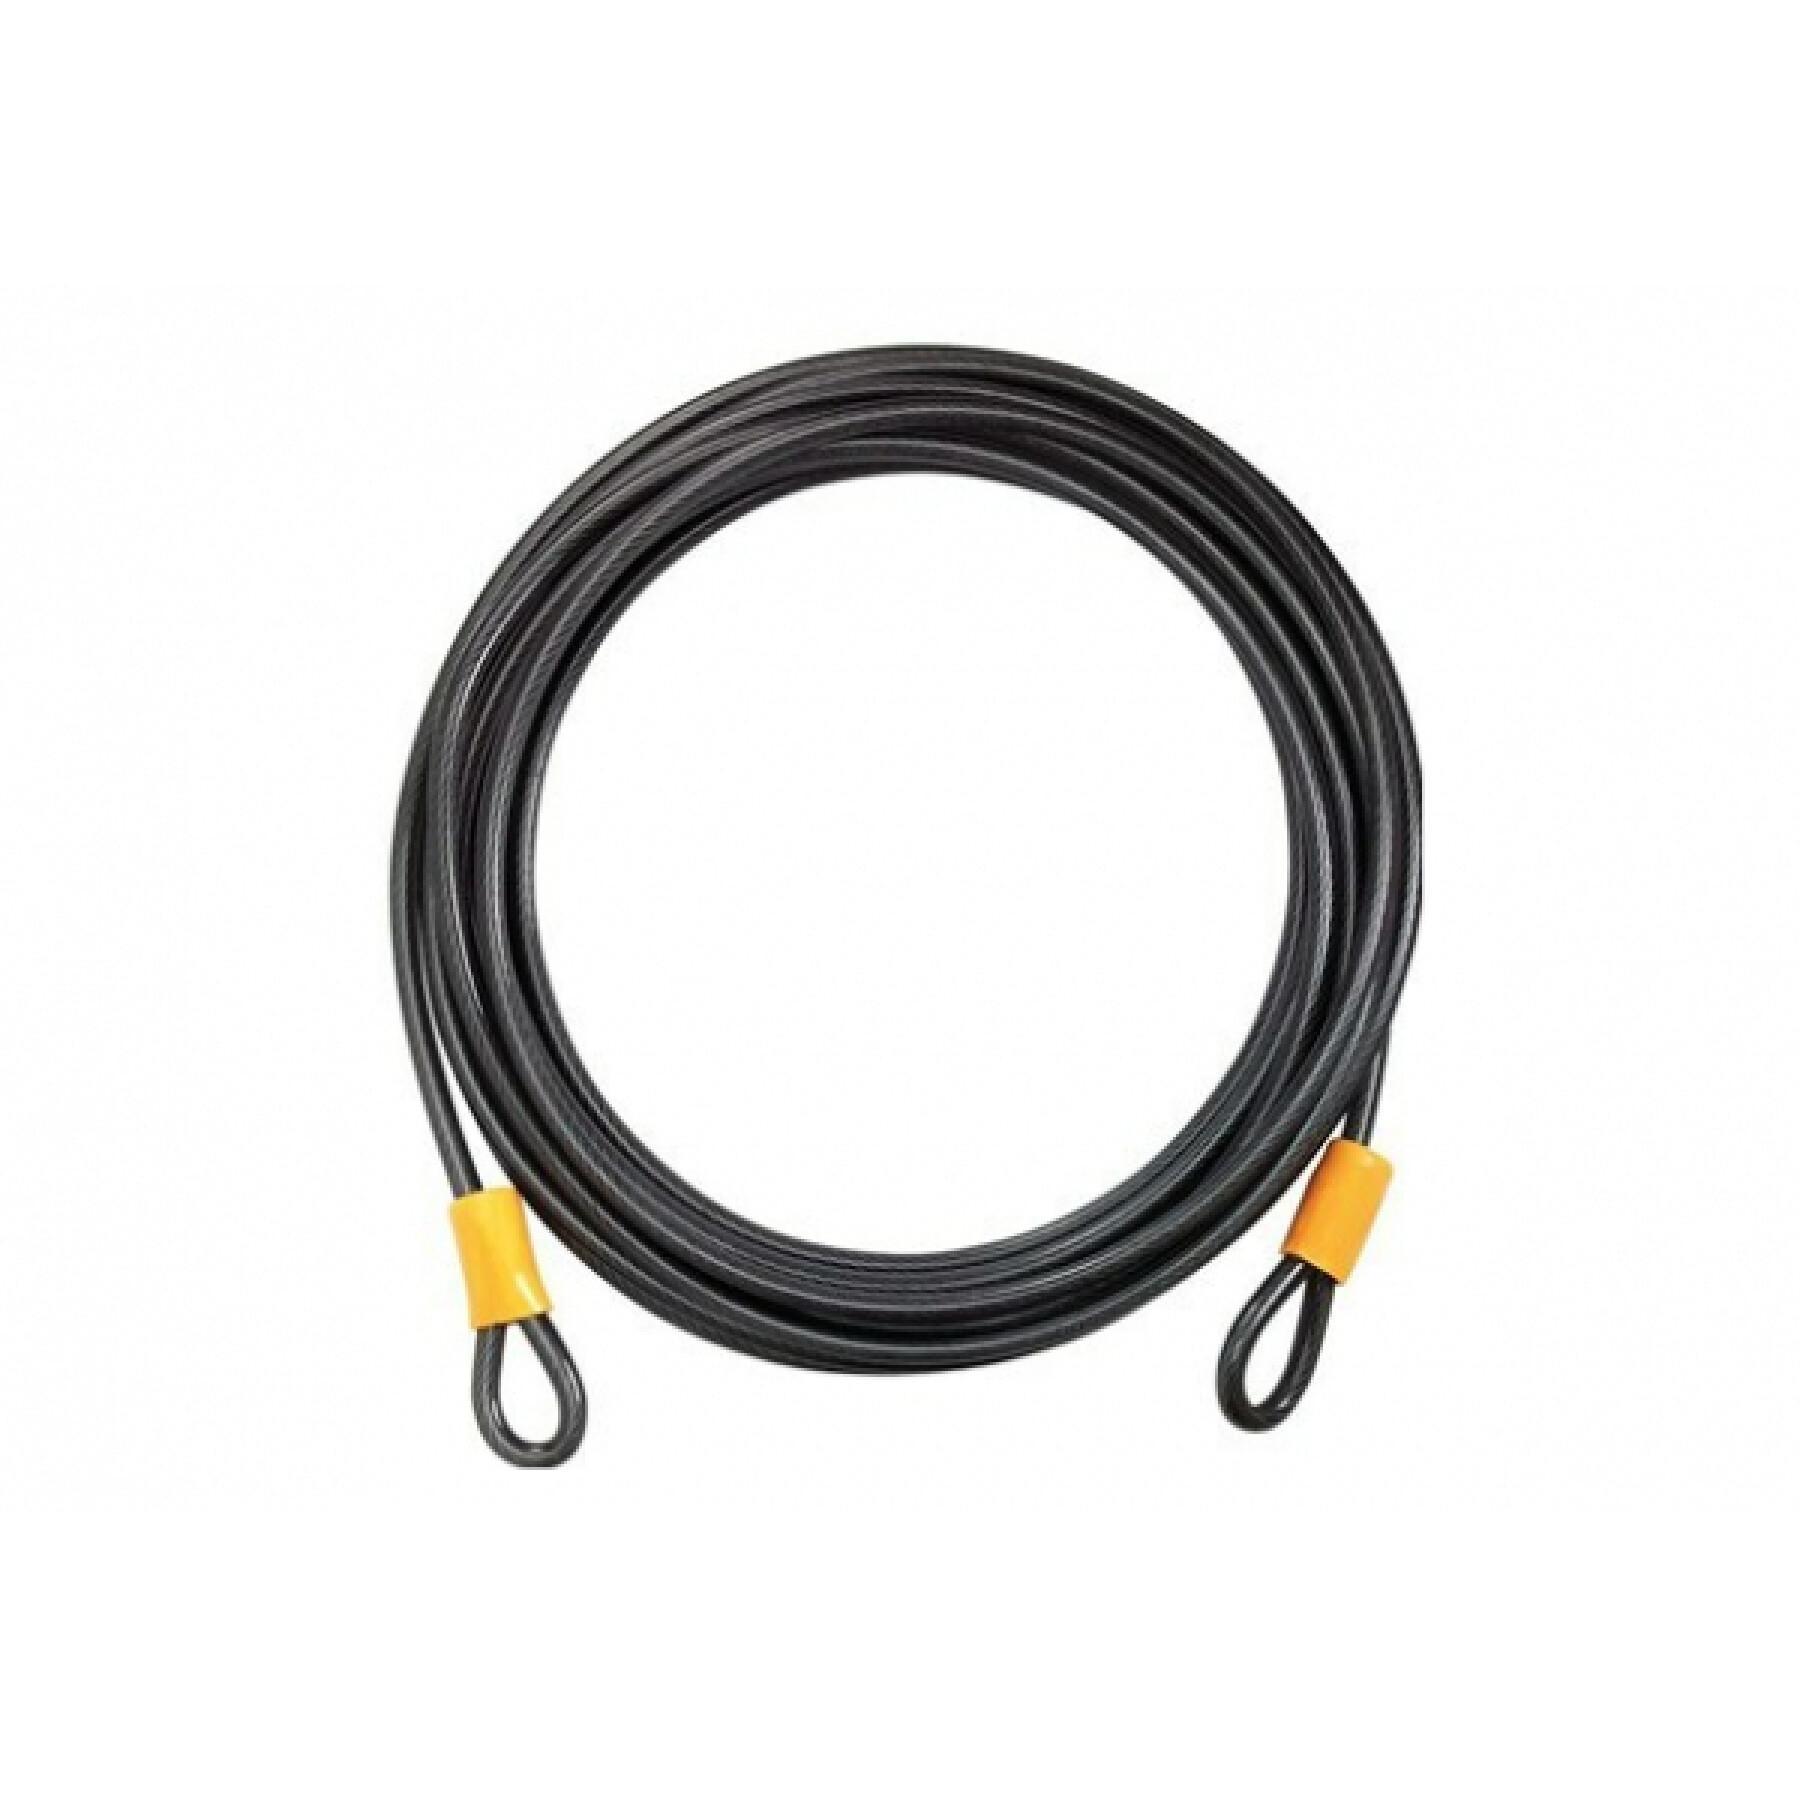 Cable antirrobo Onguard Akita 8073 900cm, Ø 10mm